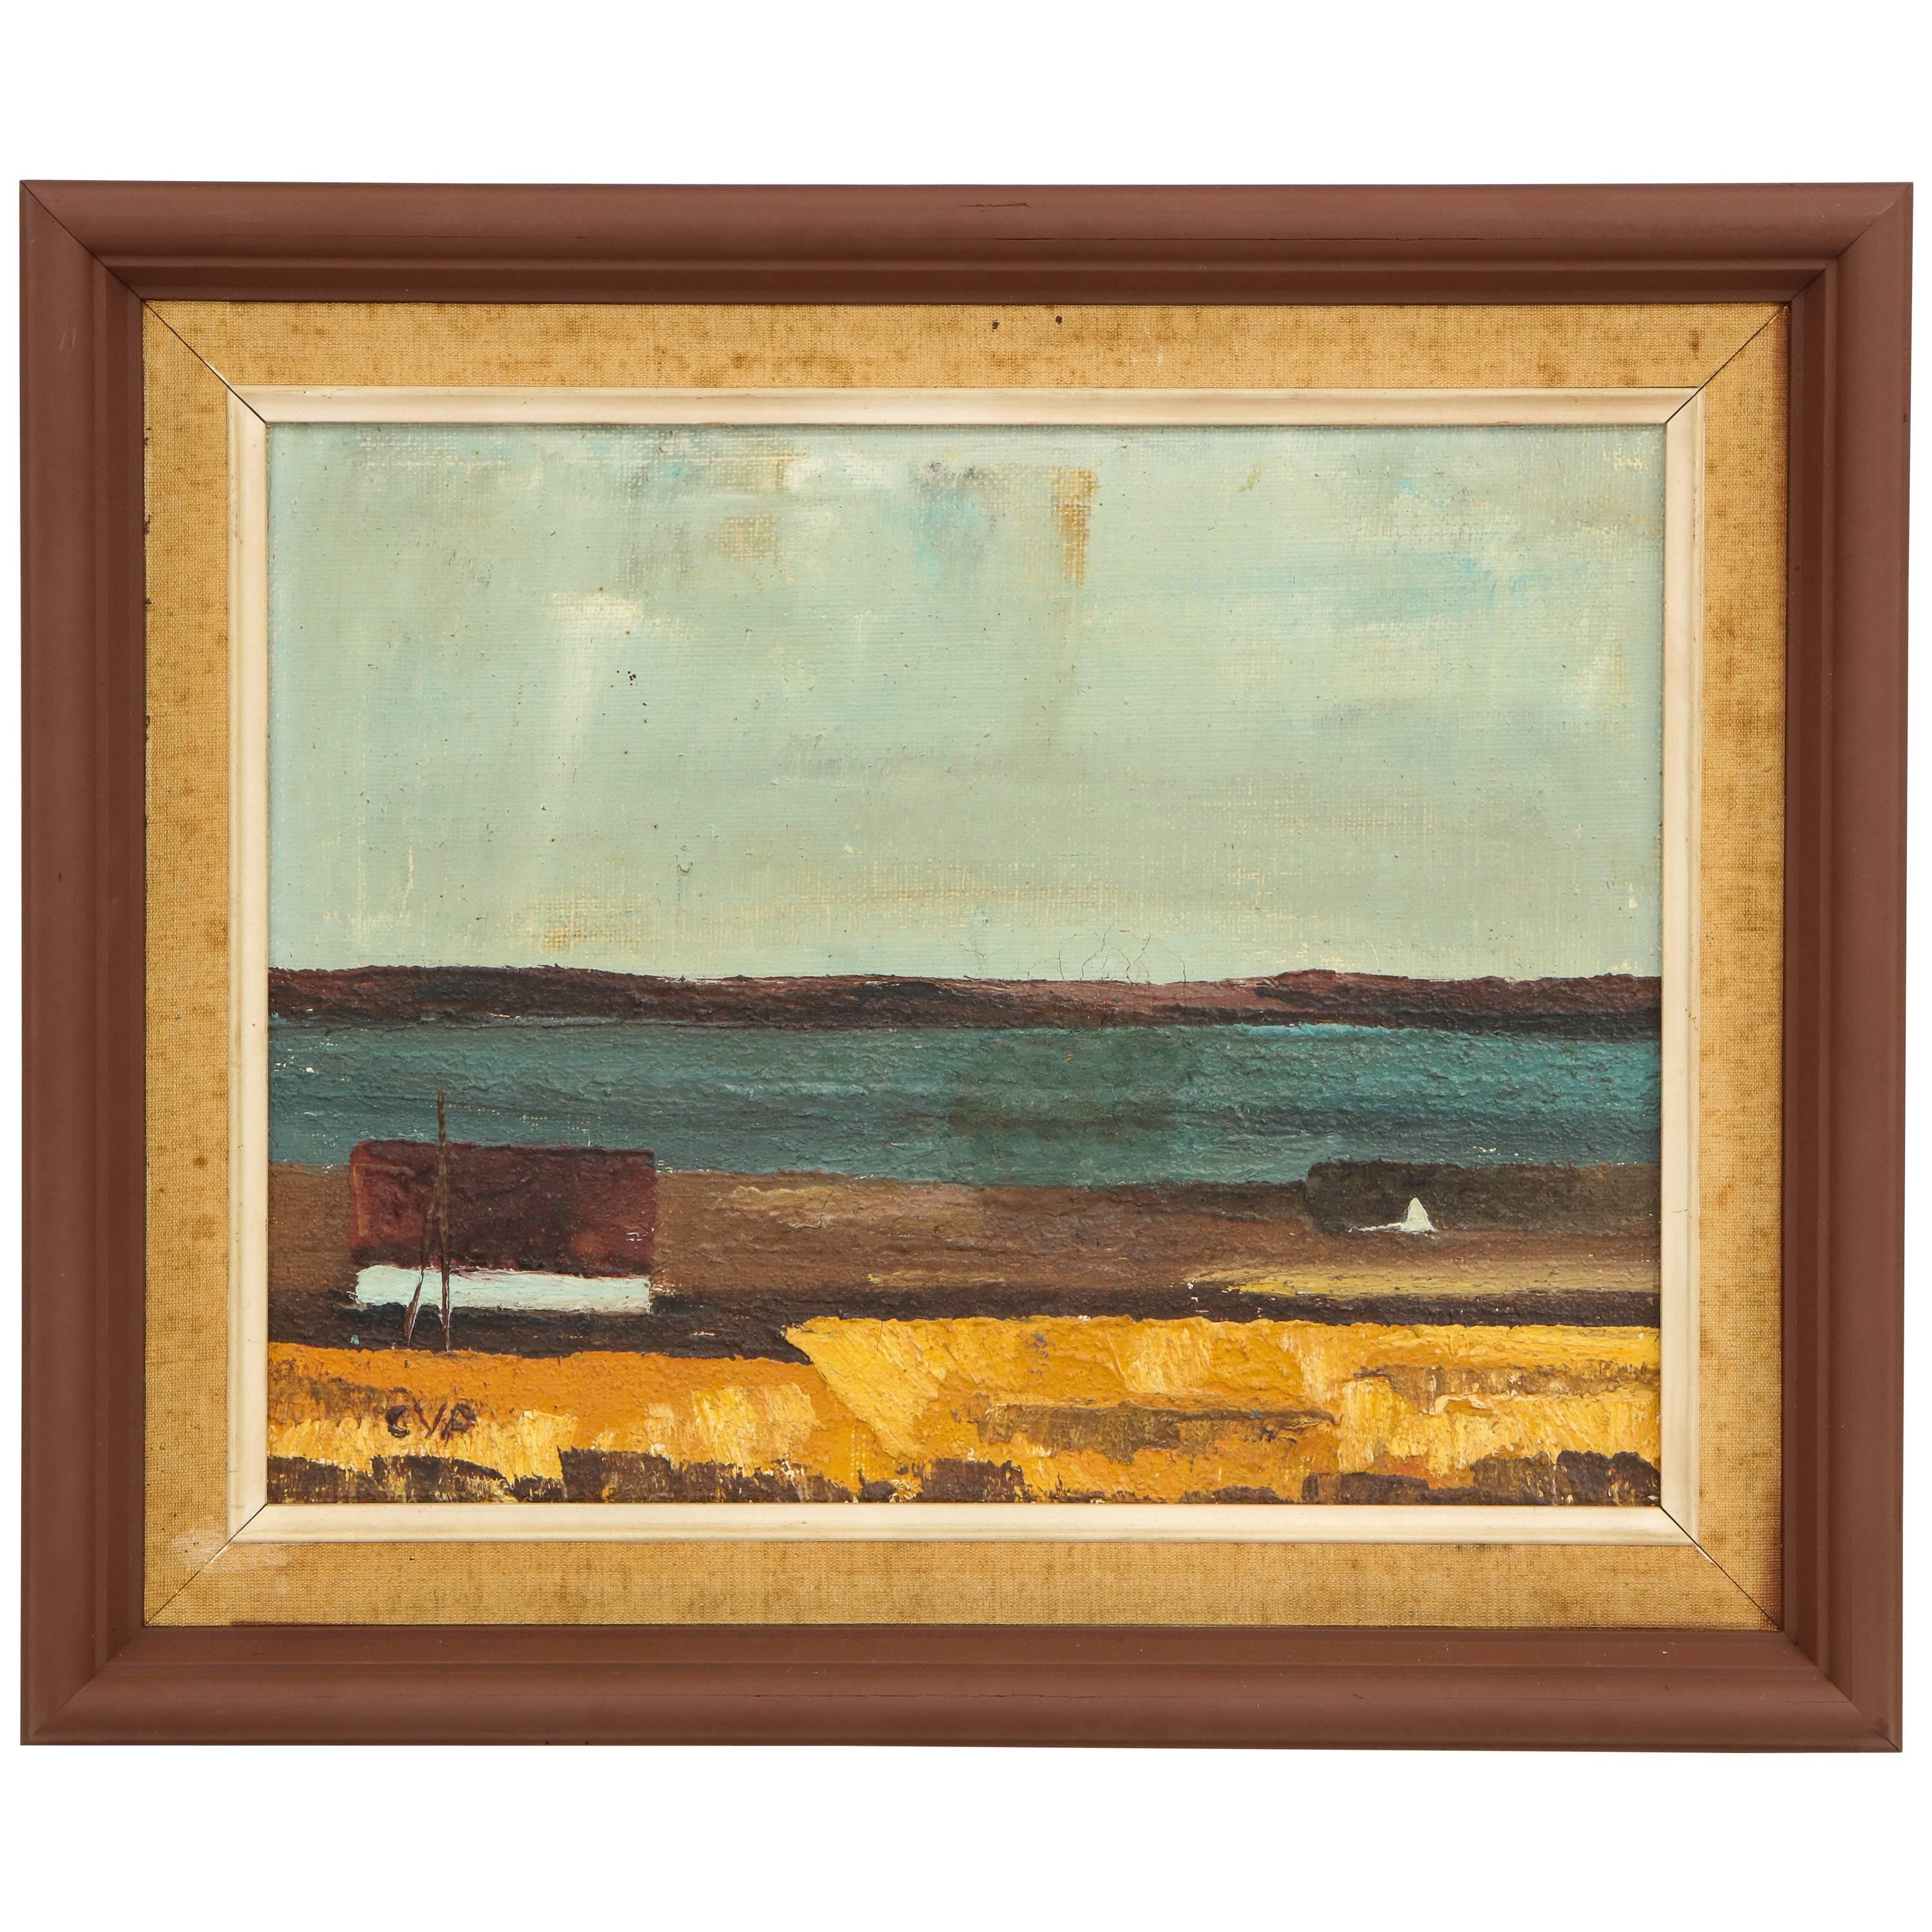 Wood Framed Vintage Landscape with Seaside Scene with House